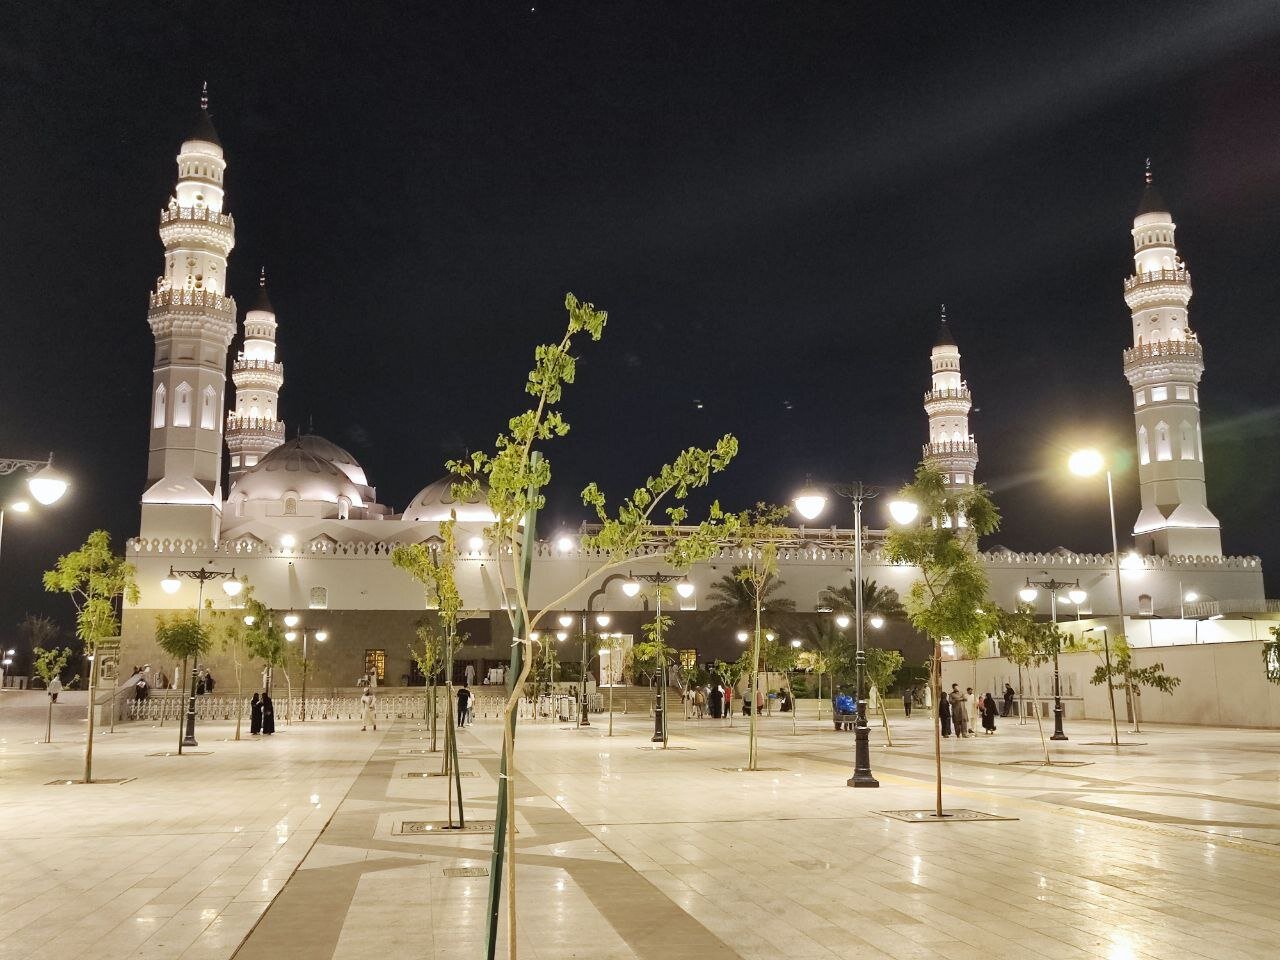 عکس | تصویری رویایی از مسجد قبا در شب